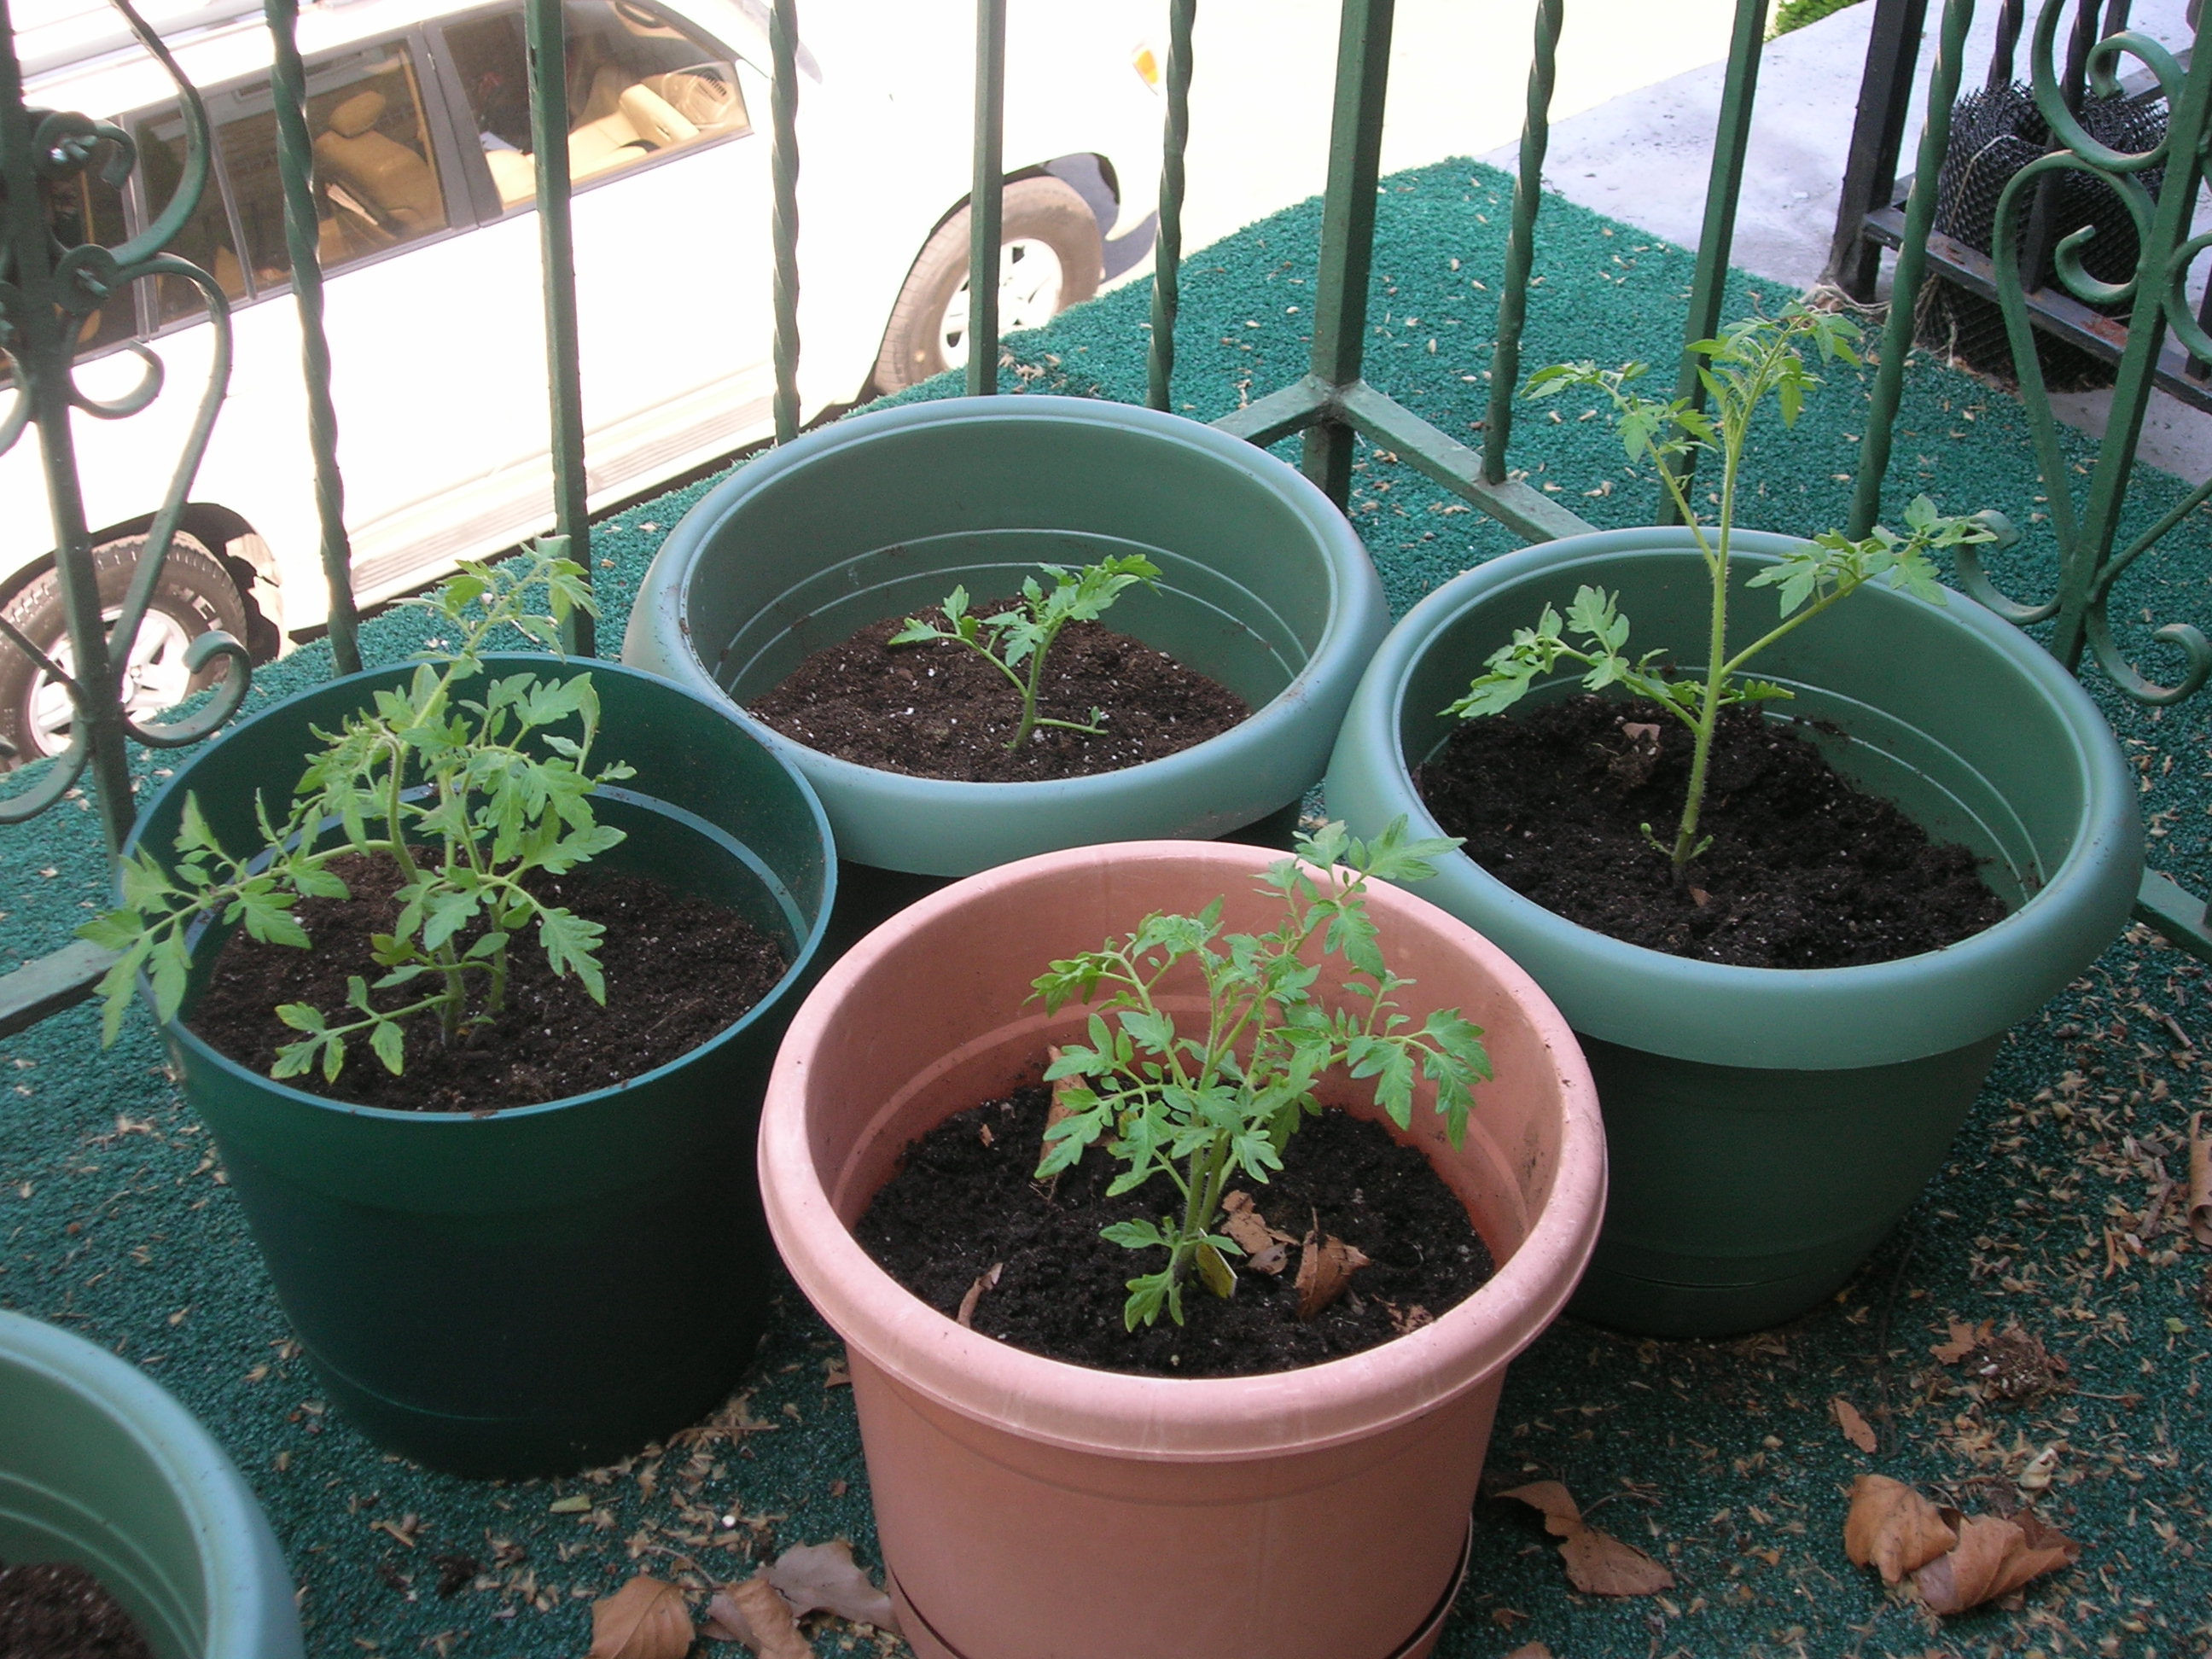 2009 Ramapo tomato plants